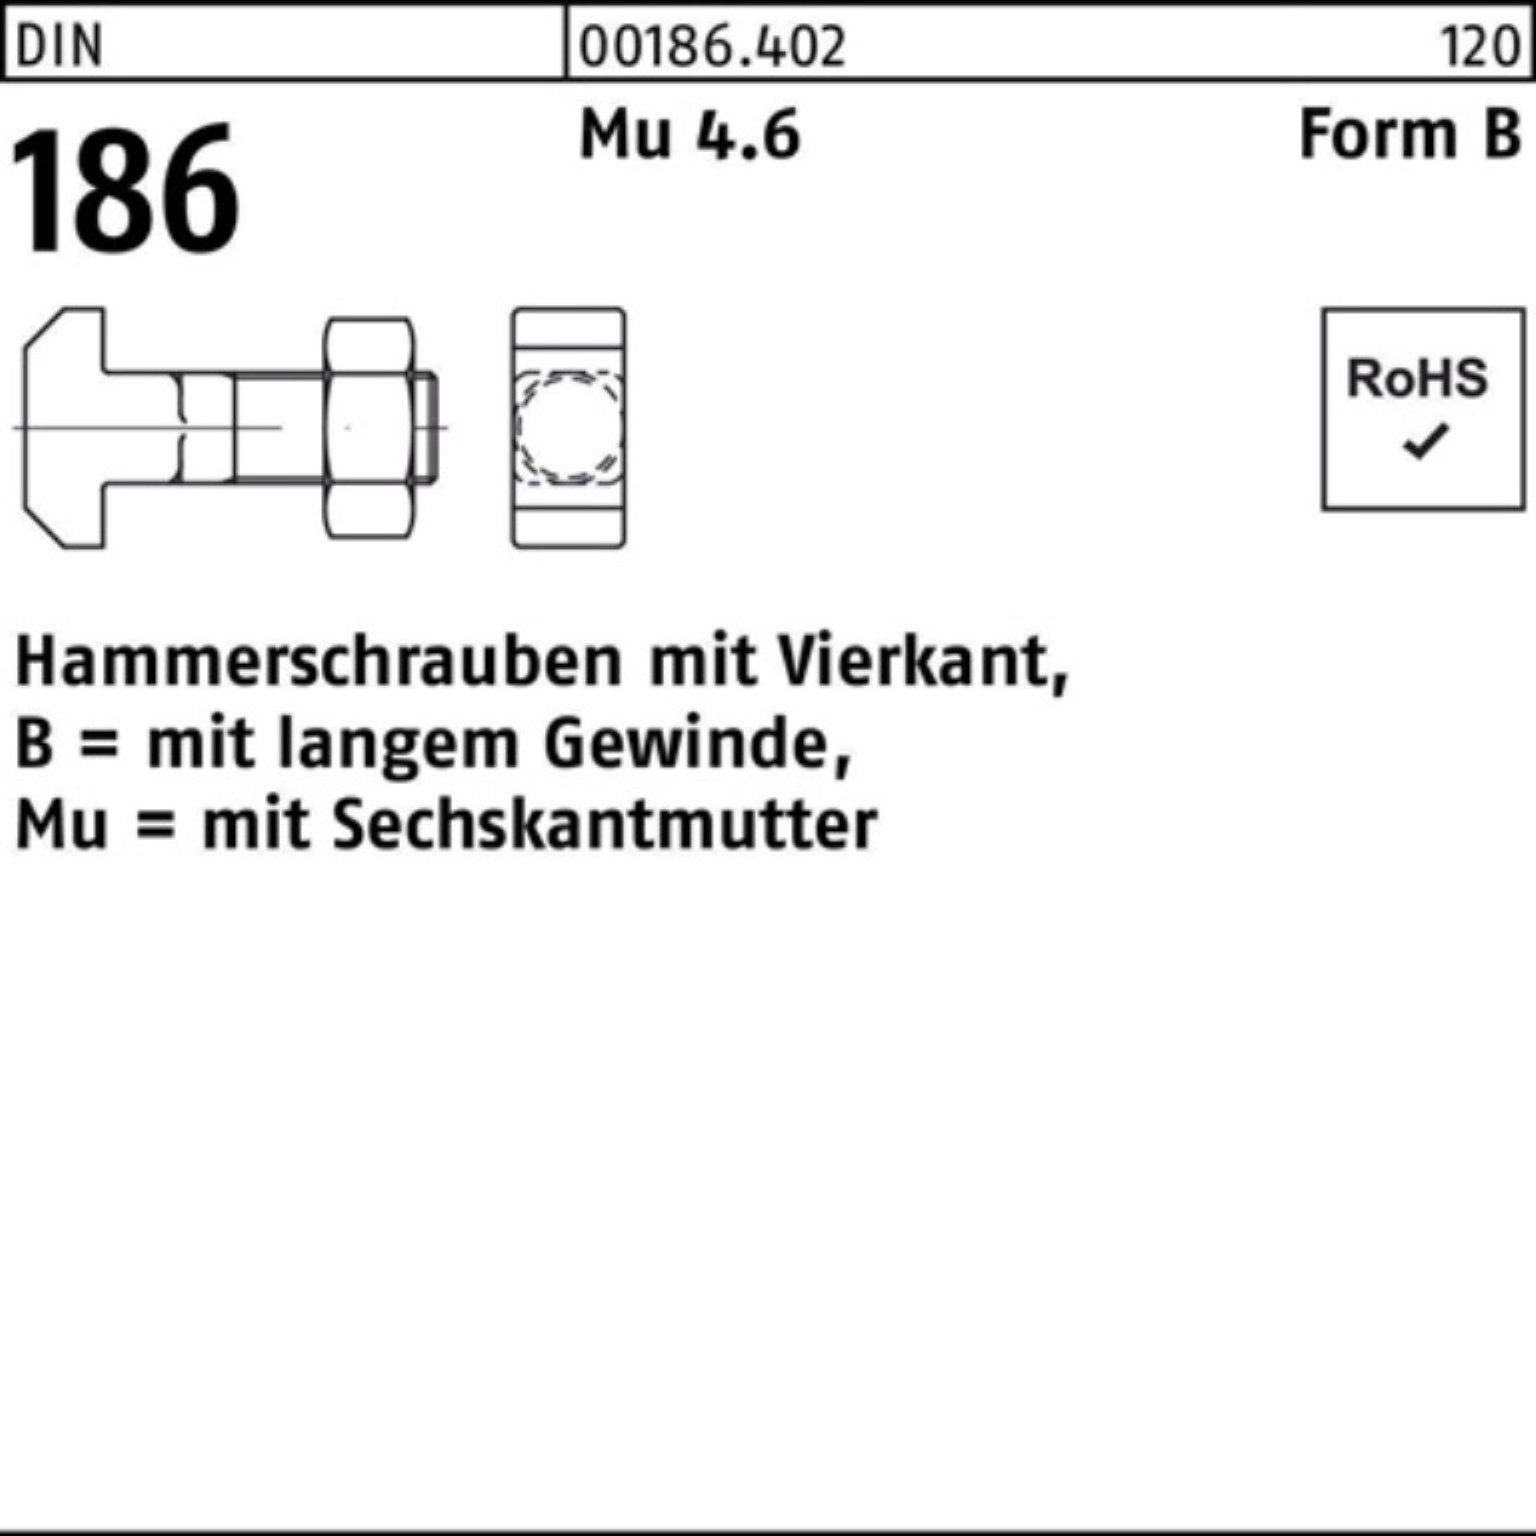 BM 10x Hammerschraube Reyher 100er Vierkant 100 6-ktmutter FormB Schraube 186 DIN Pack